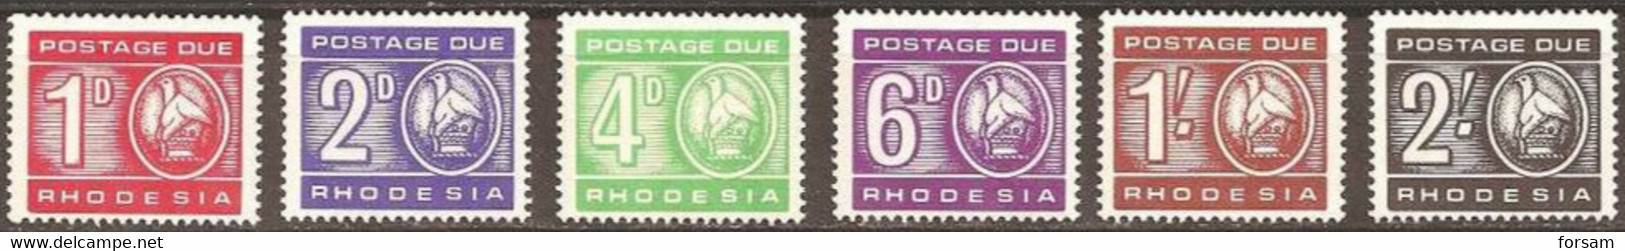 RHODESIA..1967..Michel # 5-10...MLH...Portomarken...MiCV - 18 Euro. - Rhodesien (1964-1980)